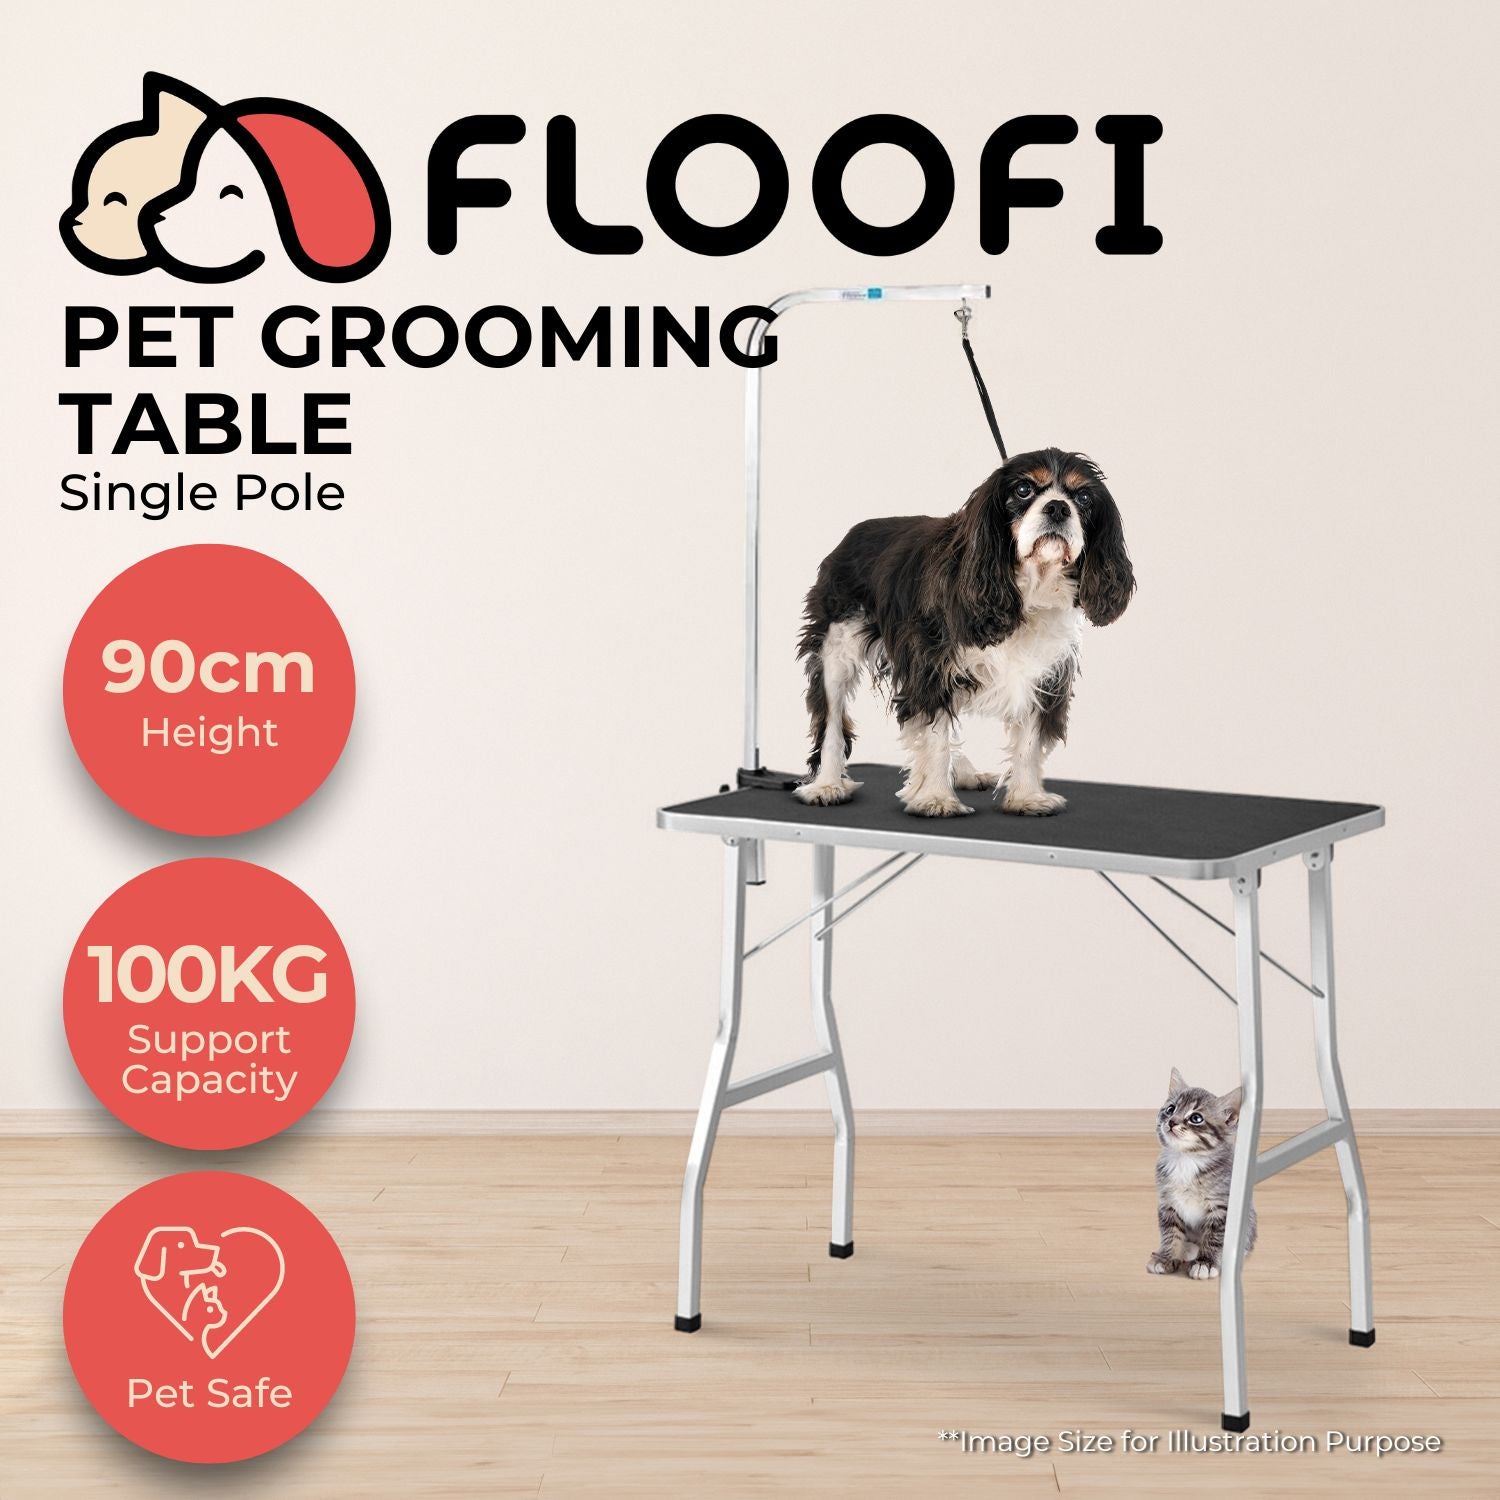 Floofi Pet Grooming Table 90cm Single Pole (Black)